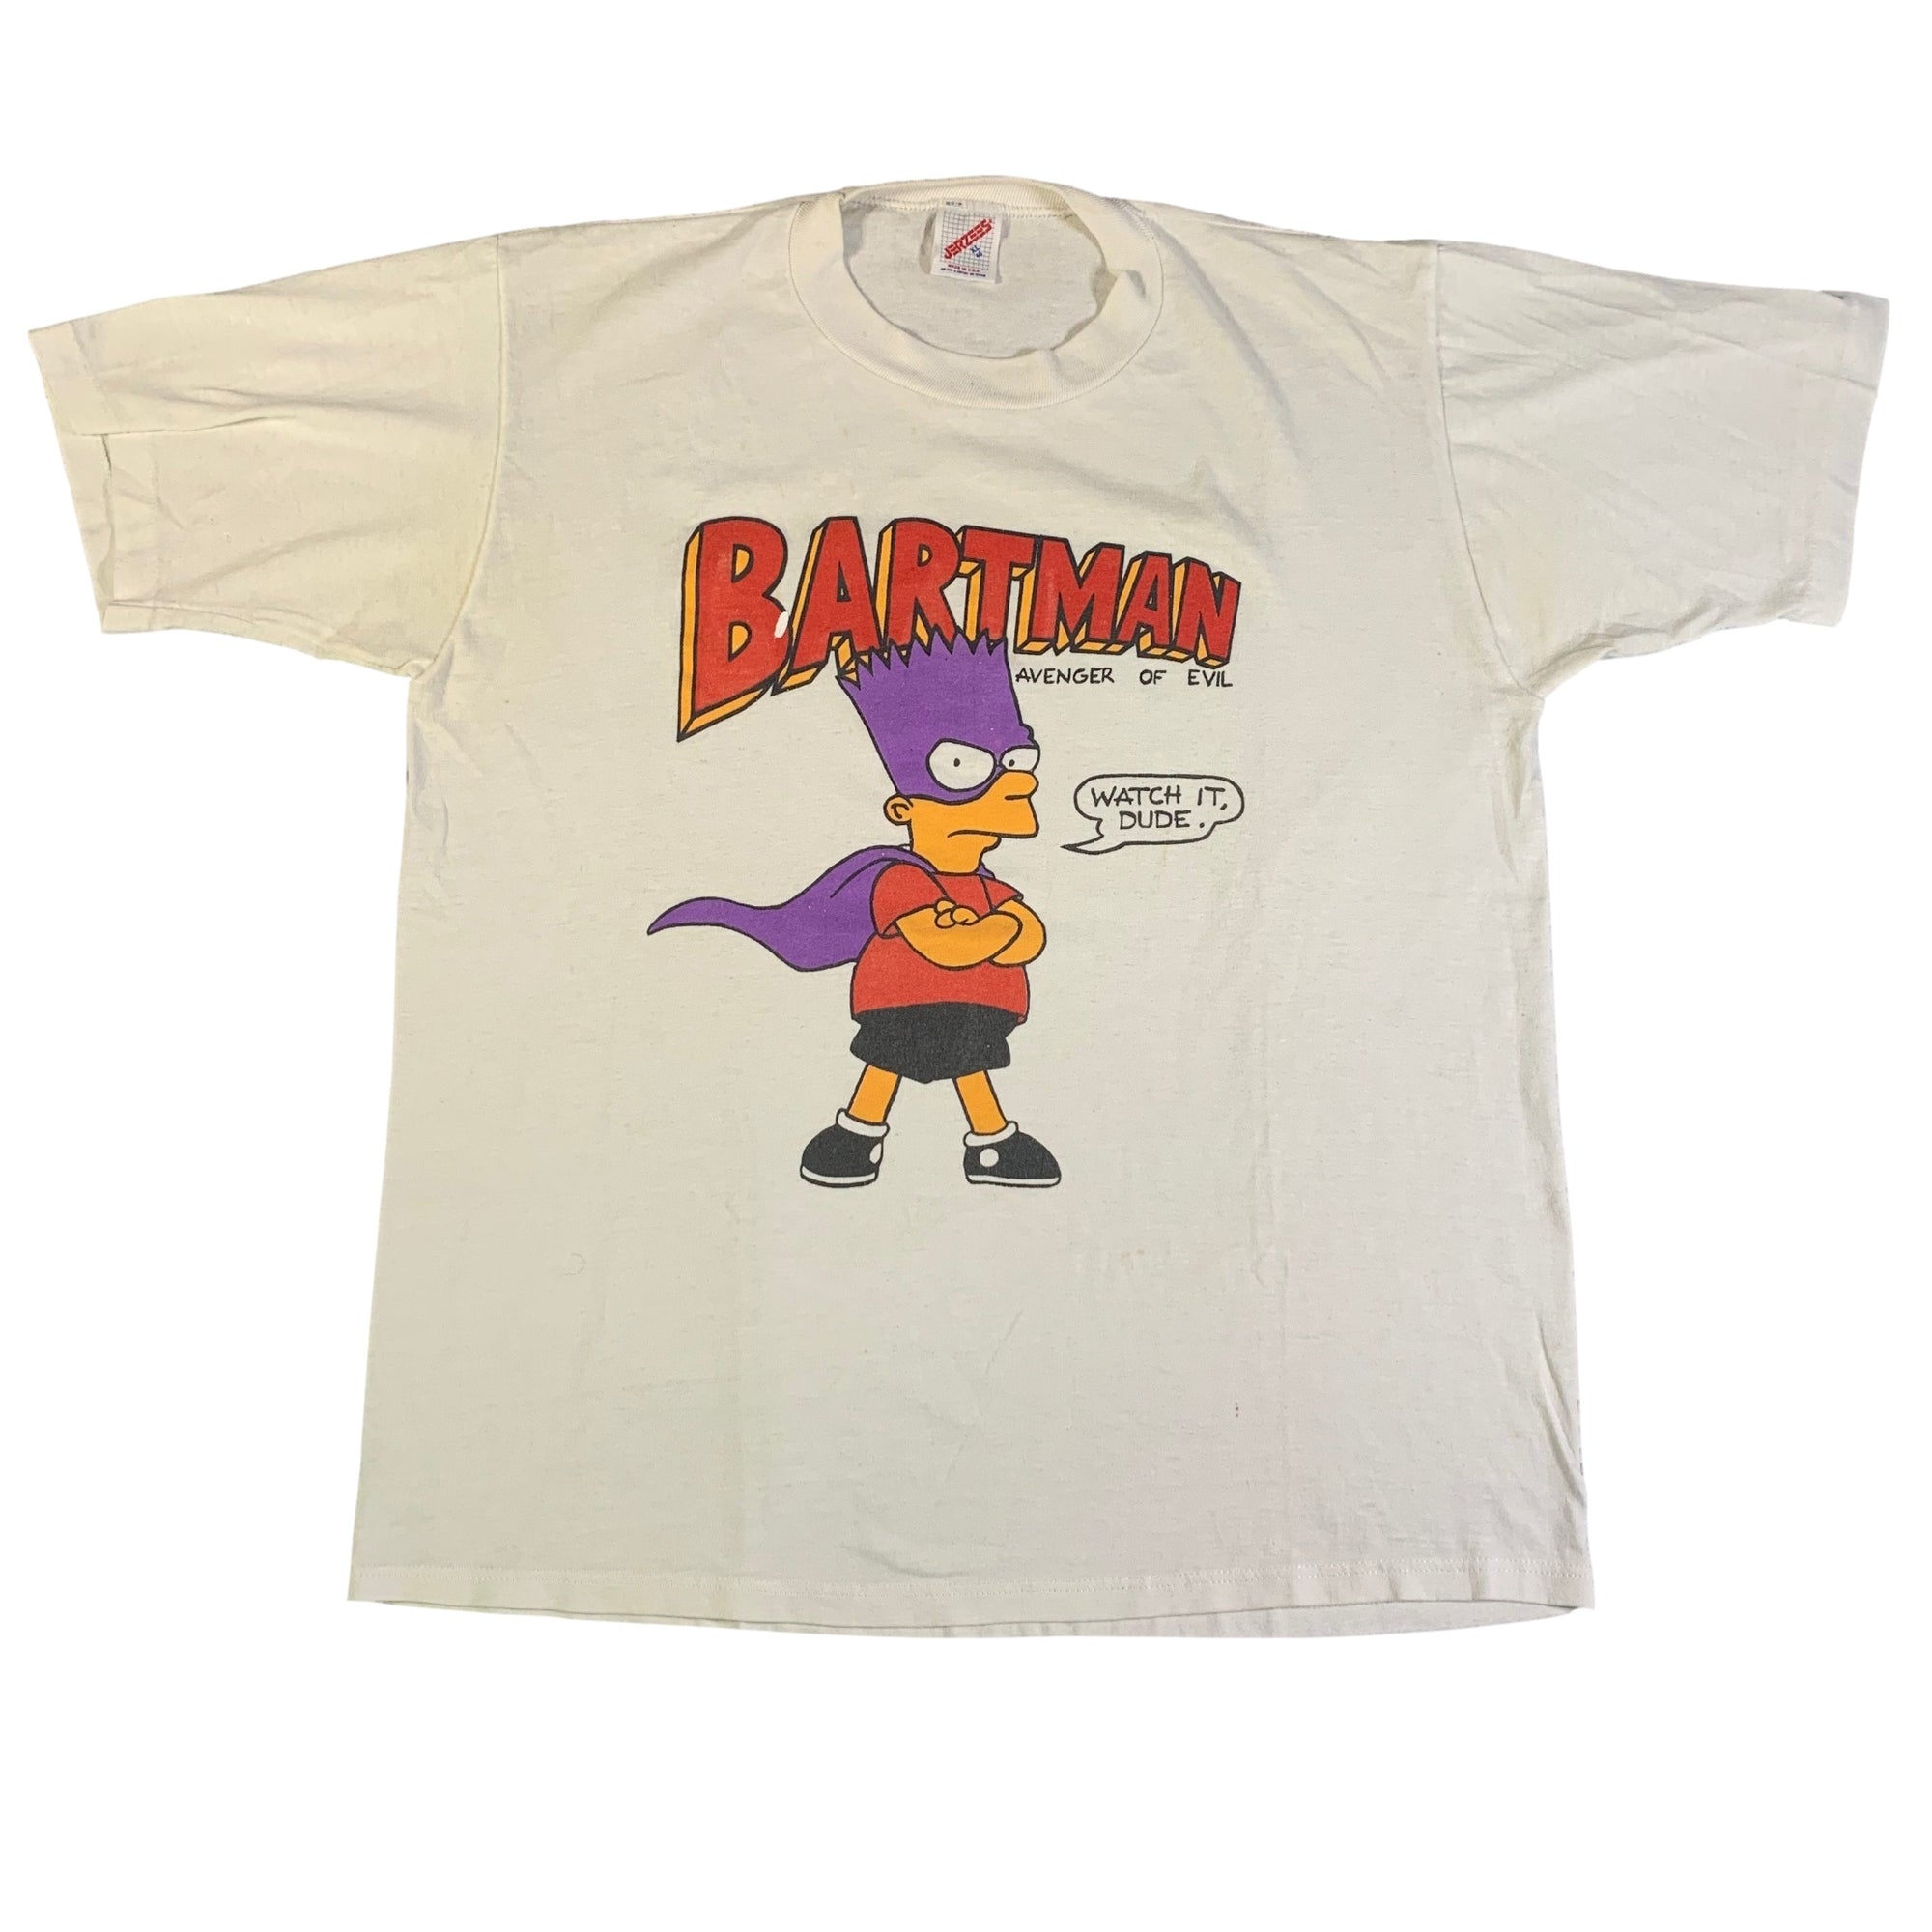 Vintage Bartman "Avenger Of Evil" T-Shirt - jointcustodydc